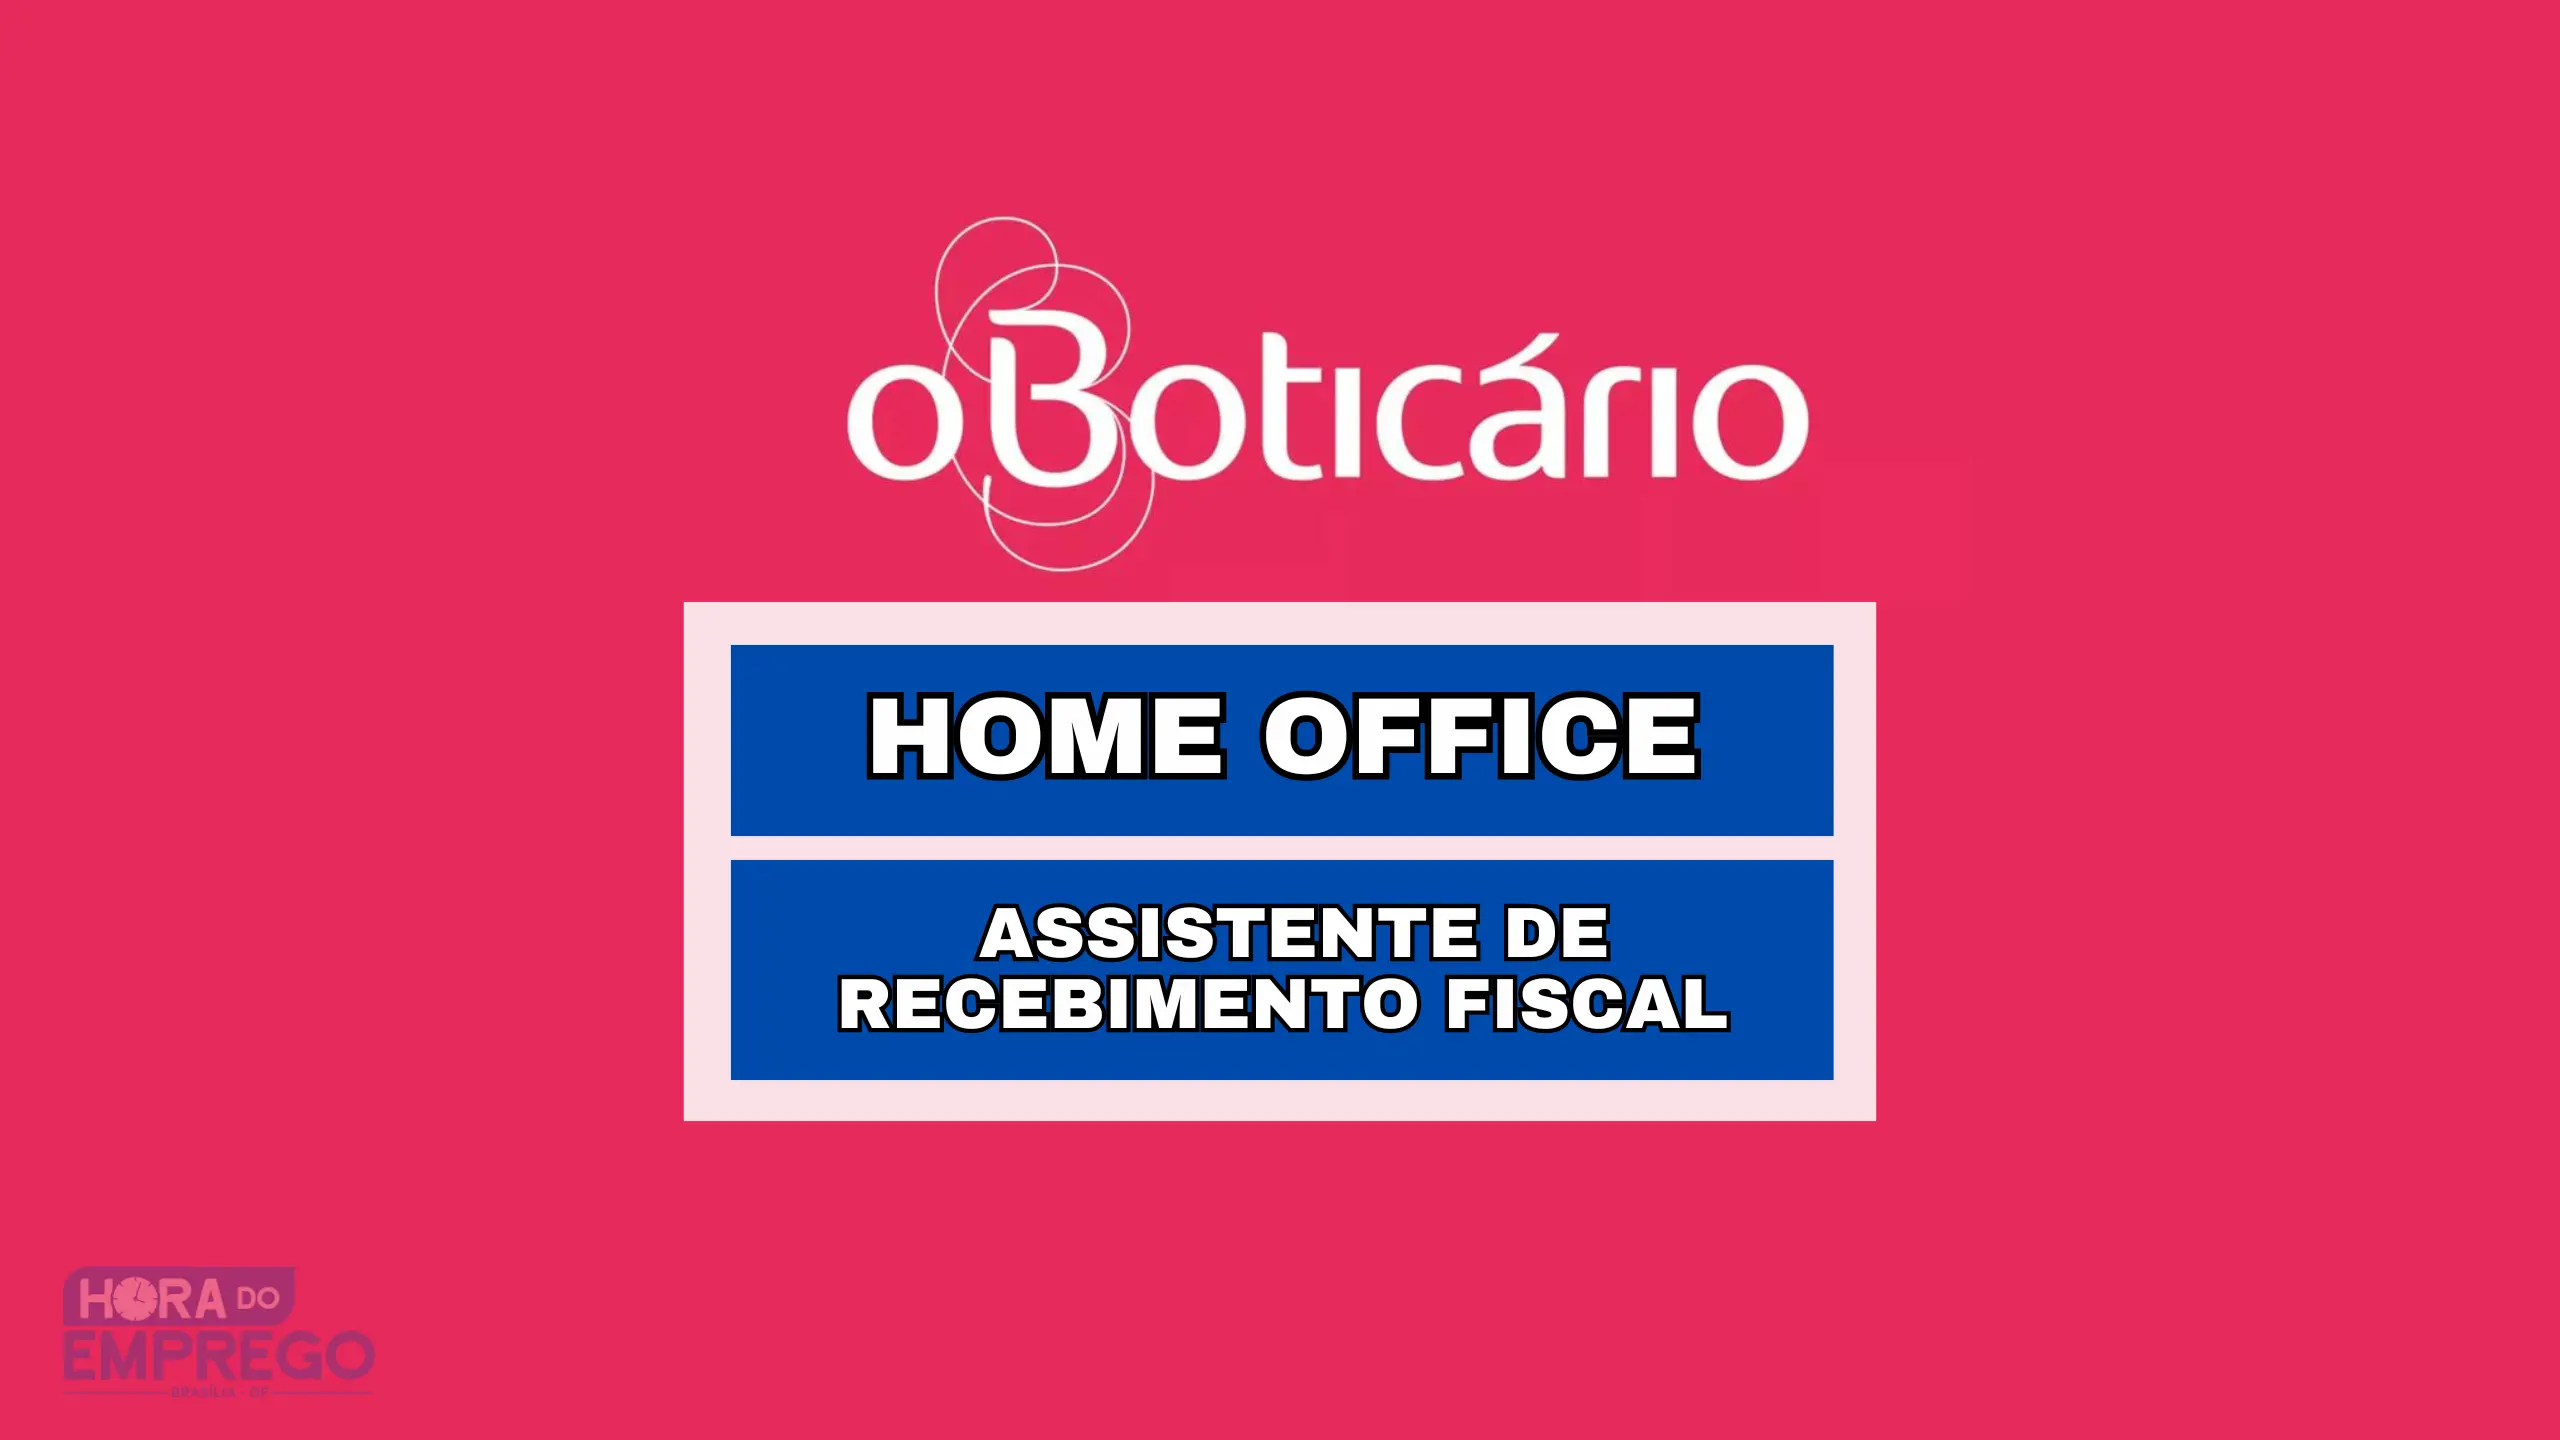 Trabalhe de Casa! Grupos Boticário anuncia vaga 100% HOME OFFICE para Assistente de Recebimento Fiscal